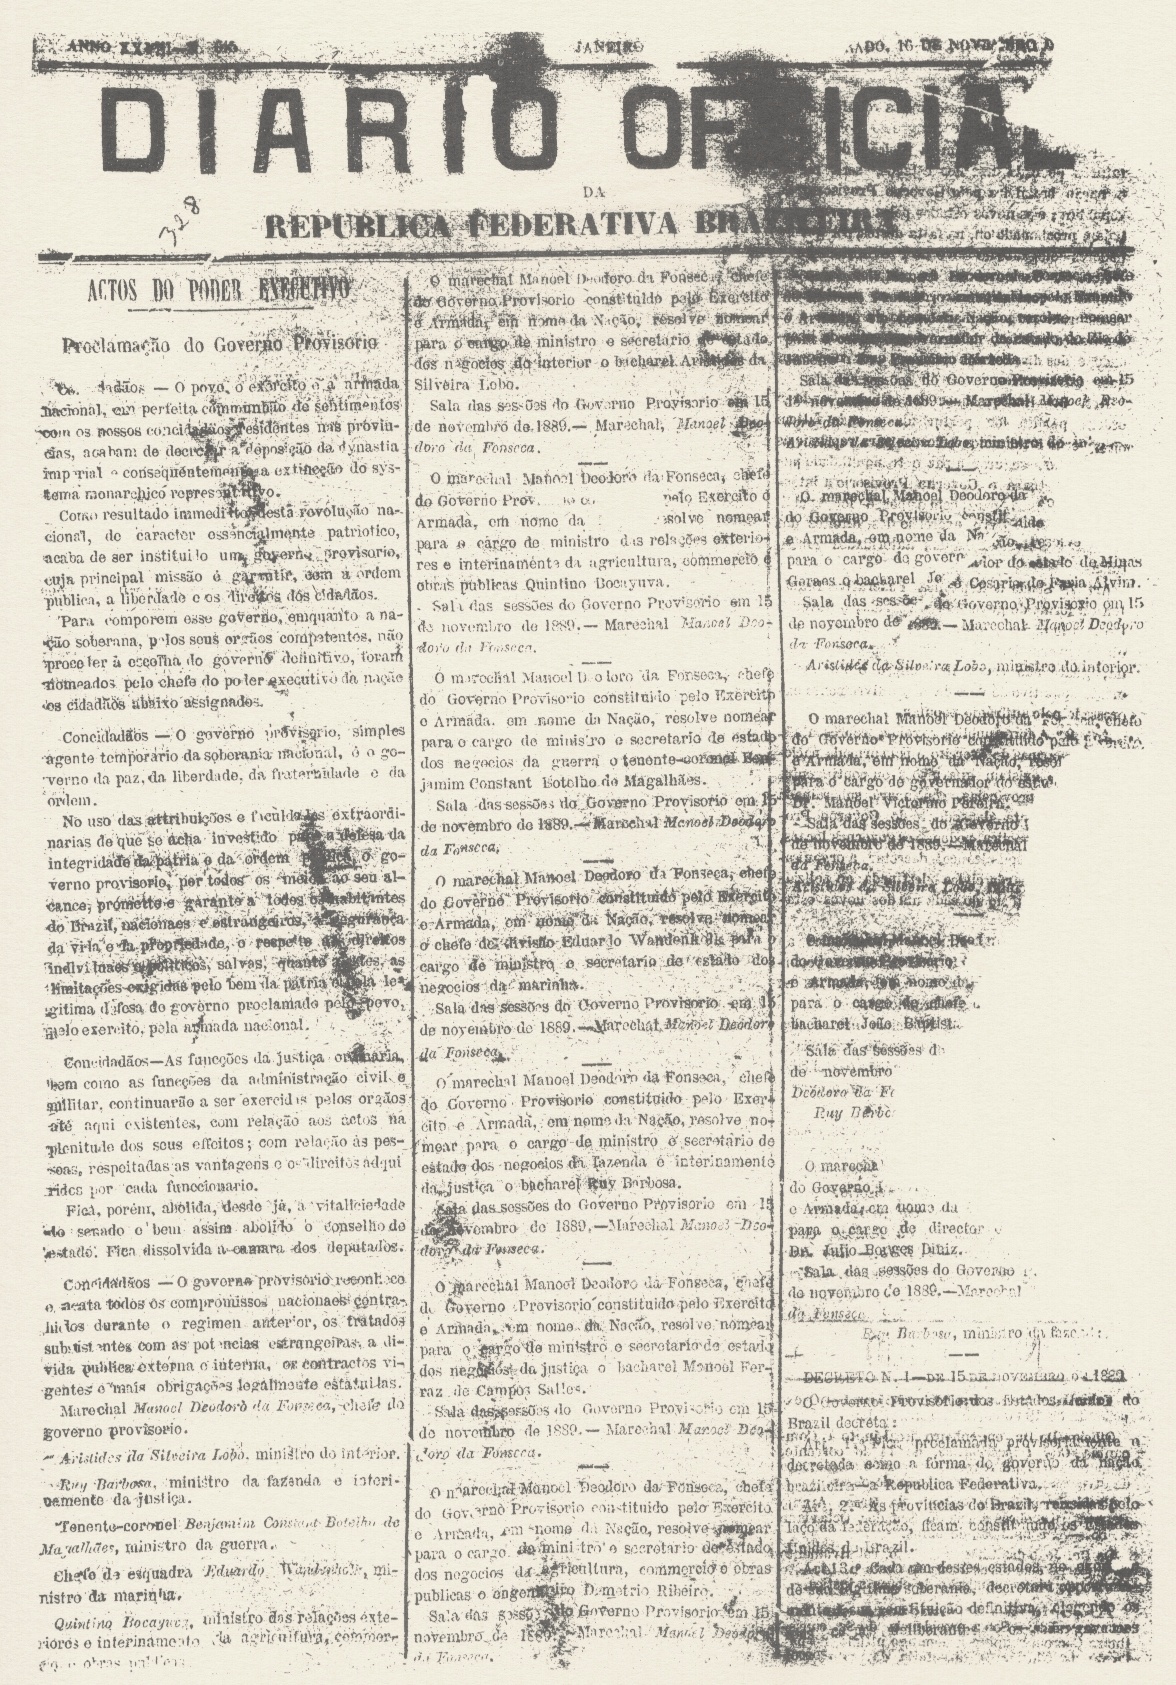 Proclamação da República - Proclamação do Governo Provisório.